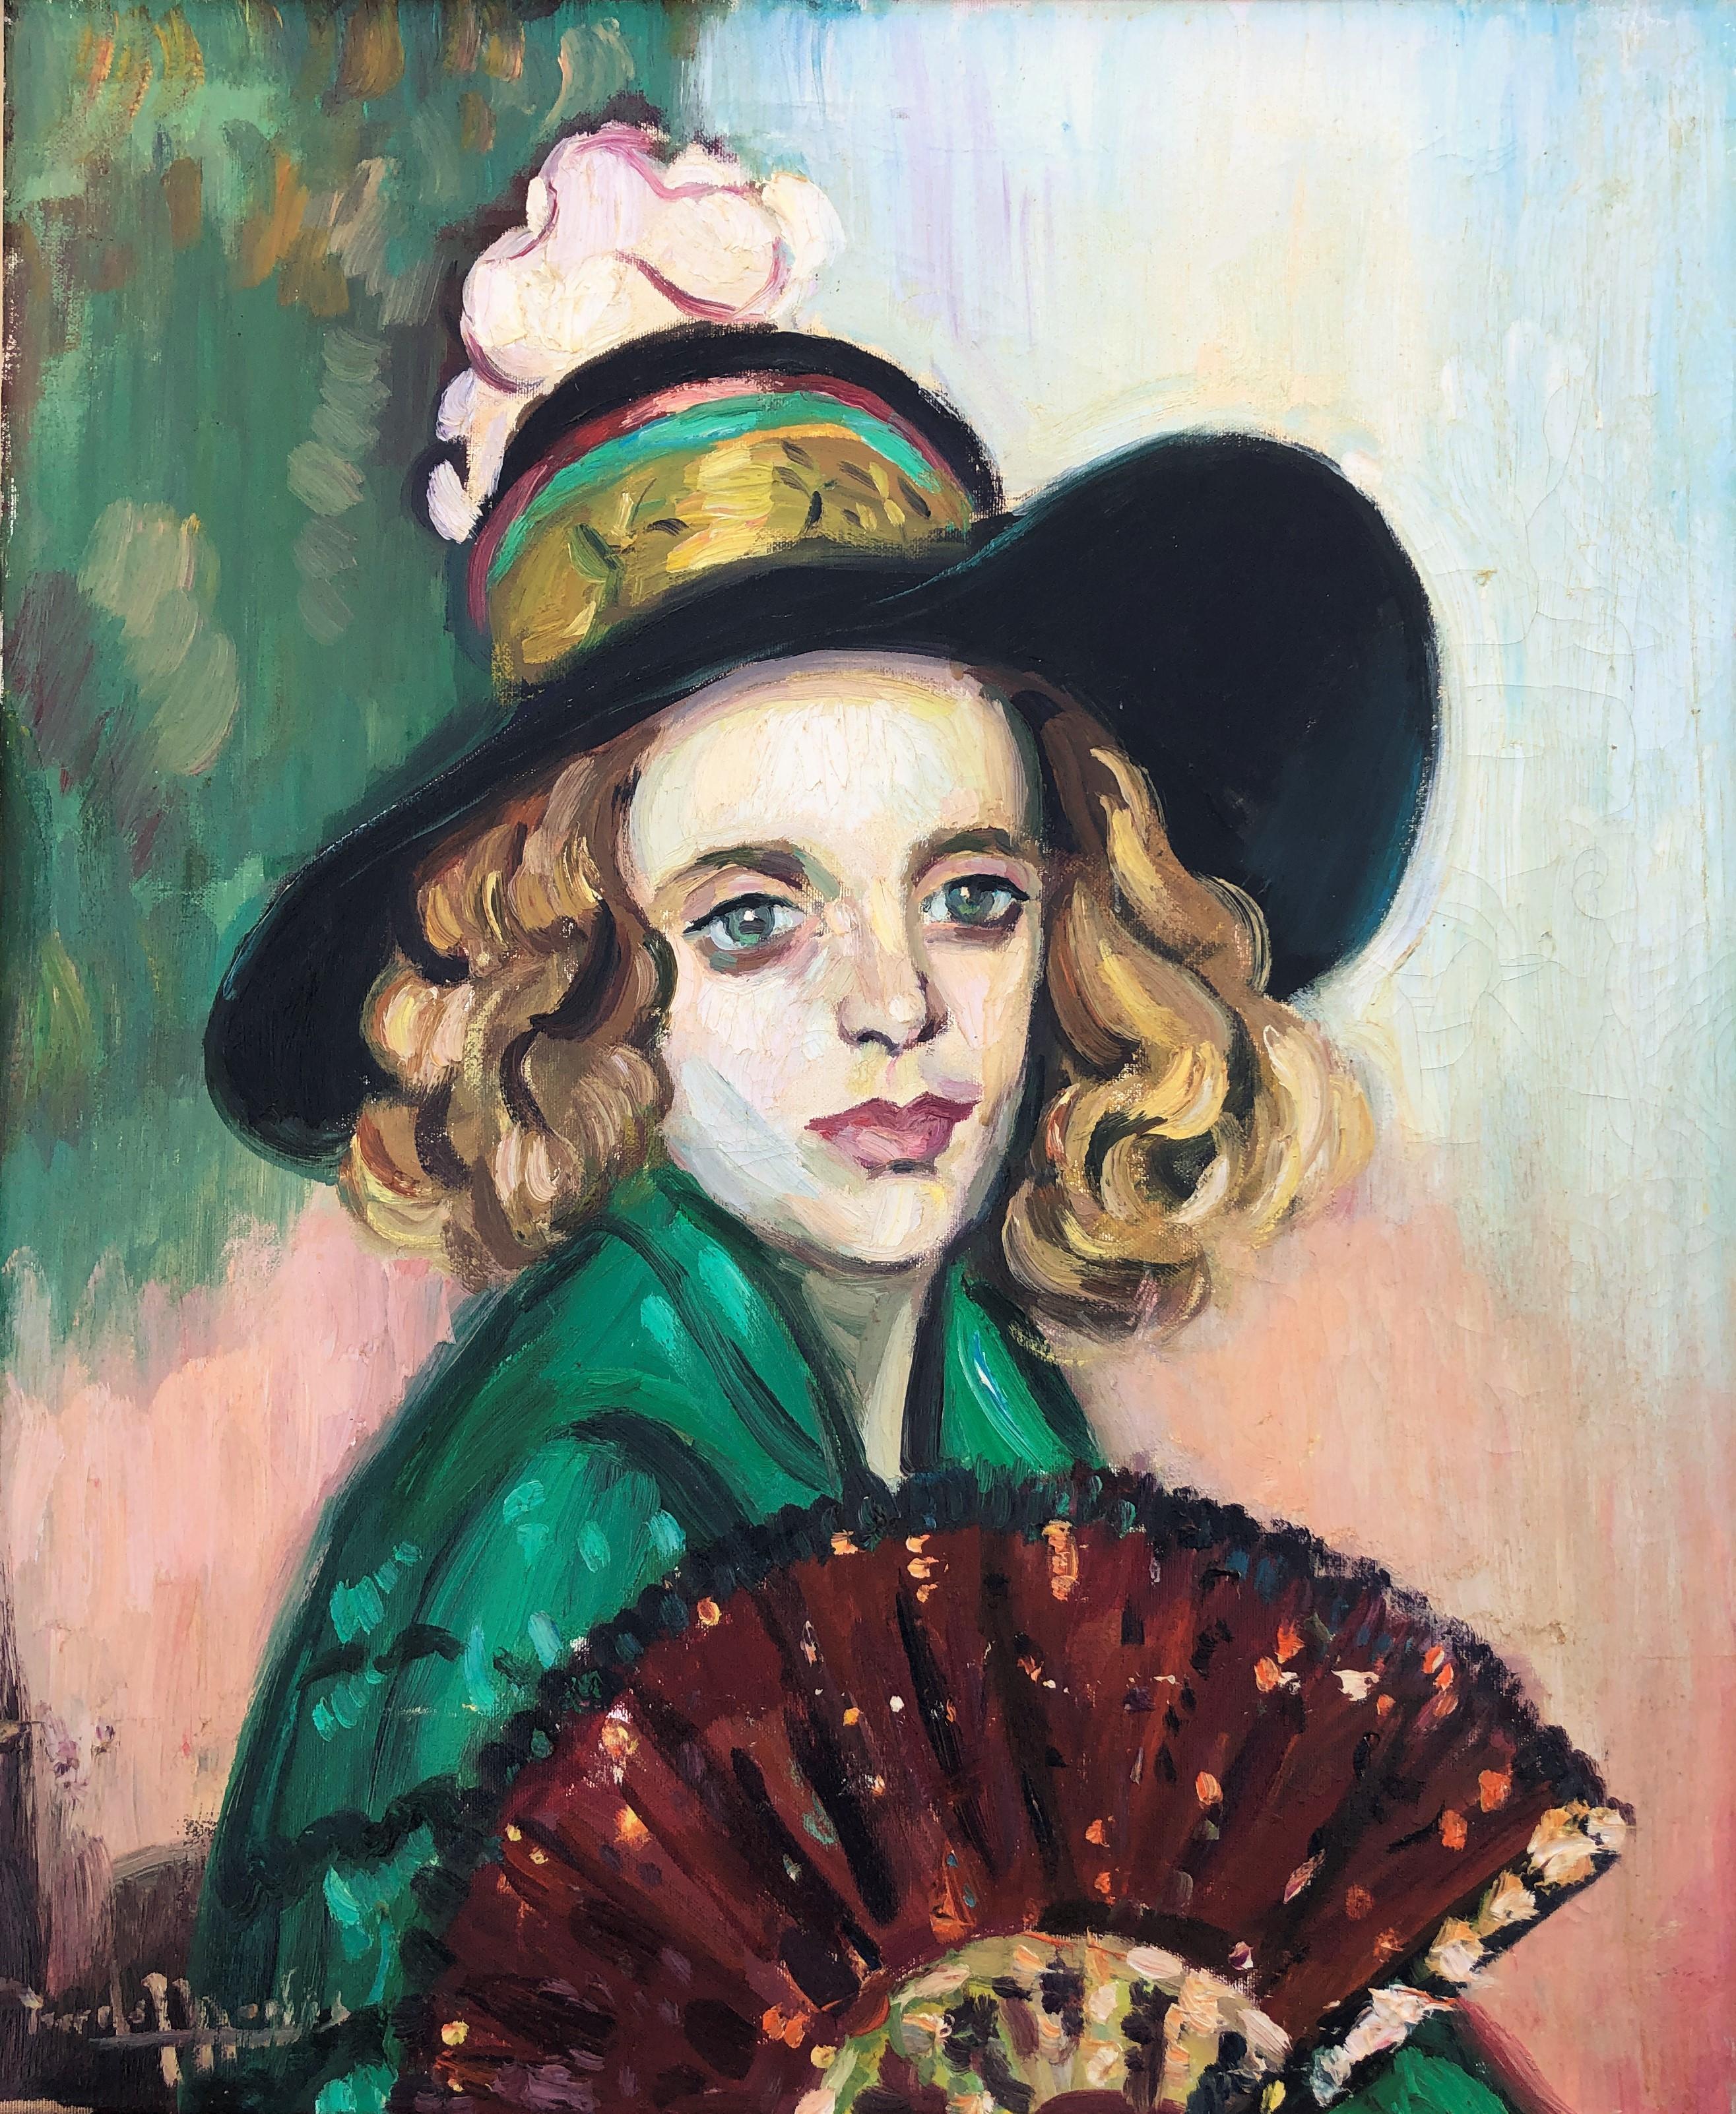 Mariano Tur de Montis Portrait Painting - Woman with fan oil on canvas painting portrait